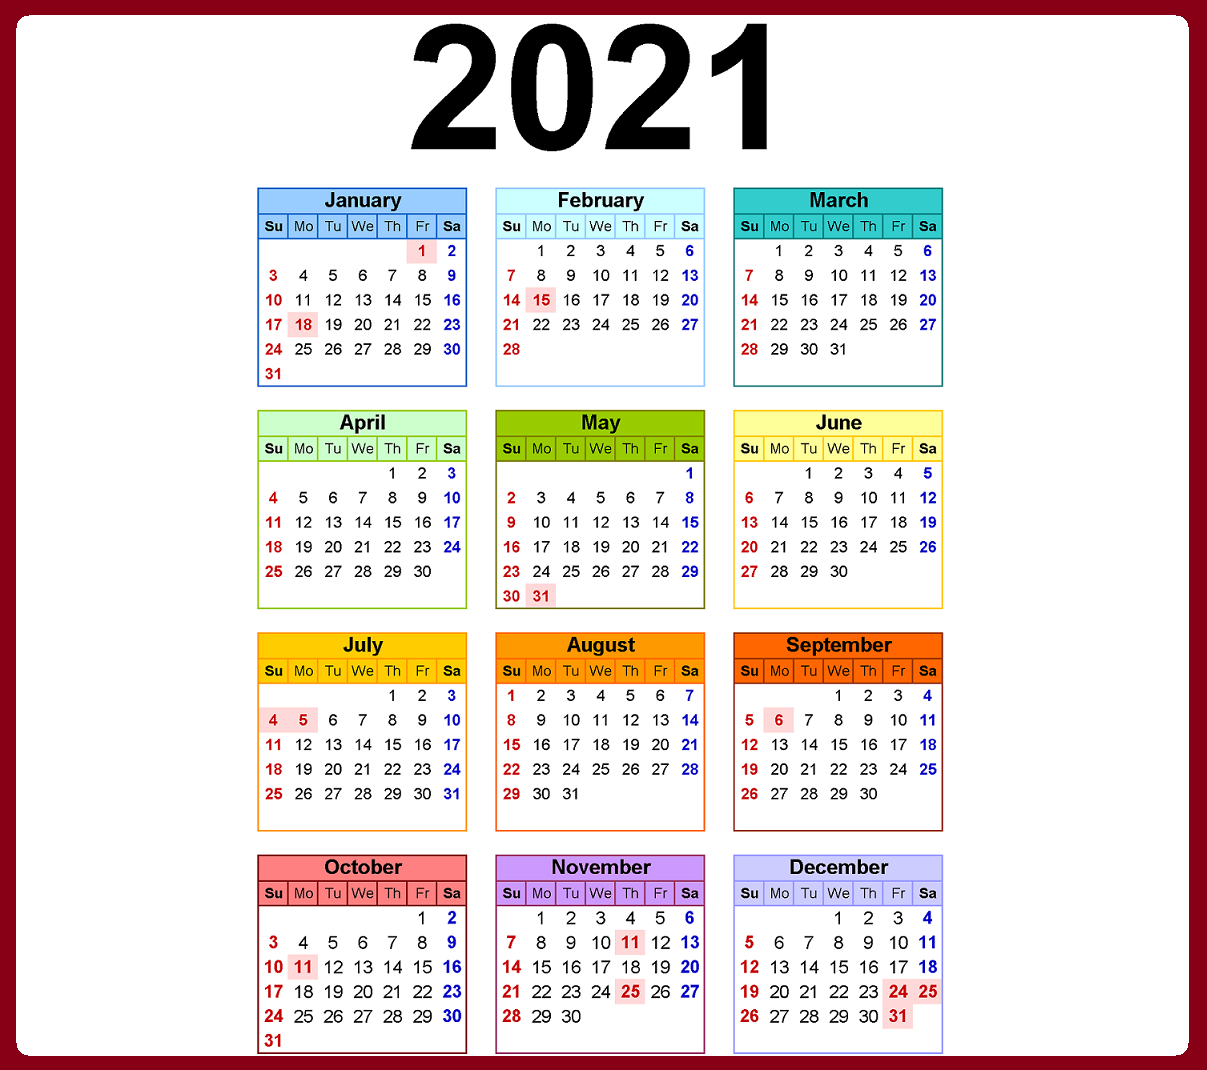 مواعيد العطلات والمناسبات الرسمية في مصر 2021 - نتيجة العام الميلادي 2021 والهجري 1442 1